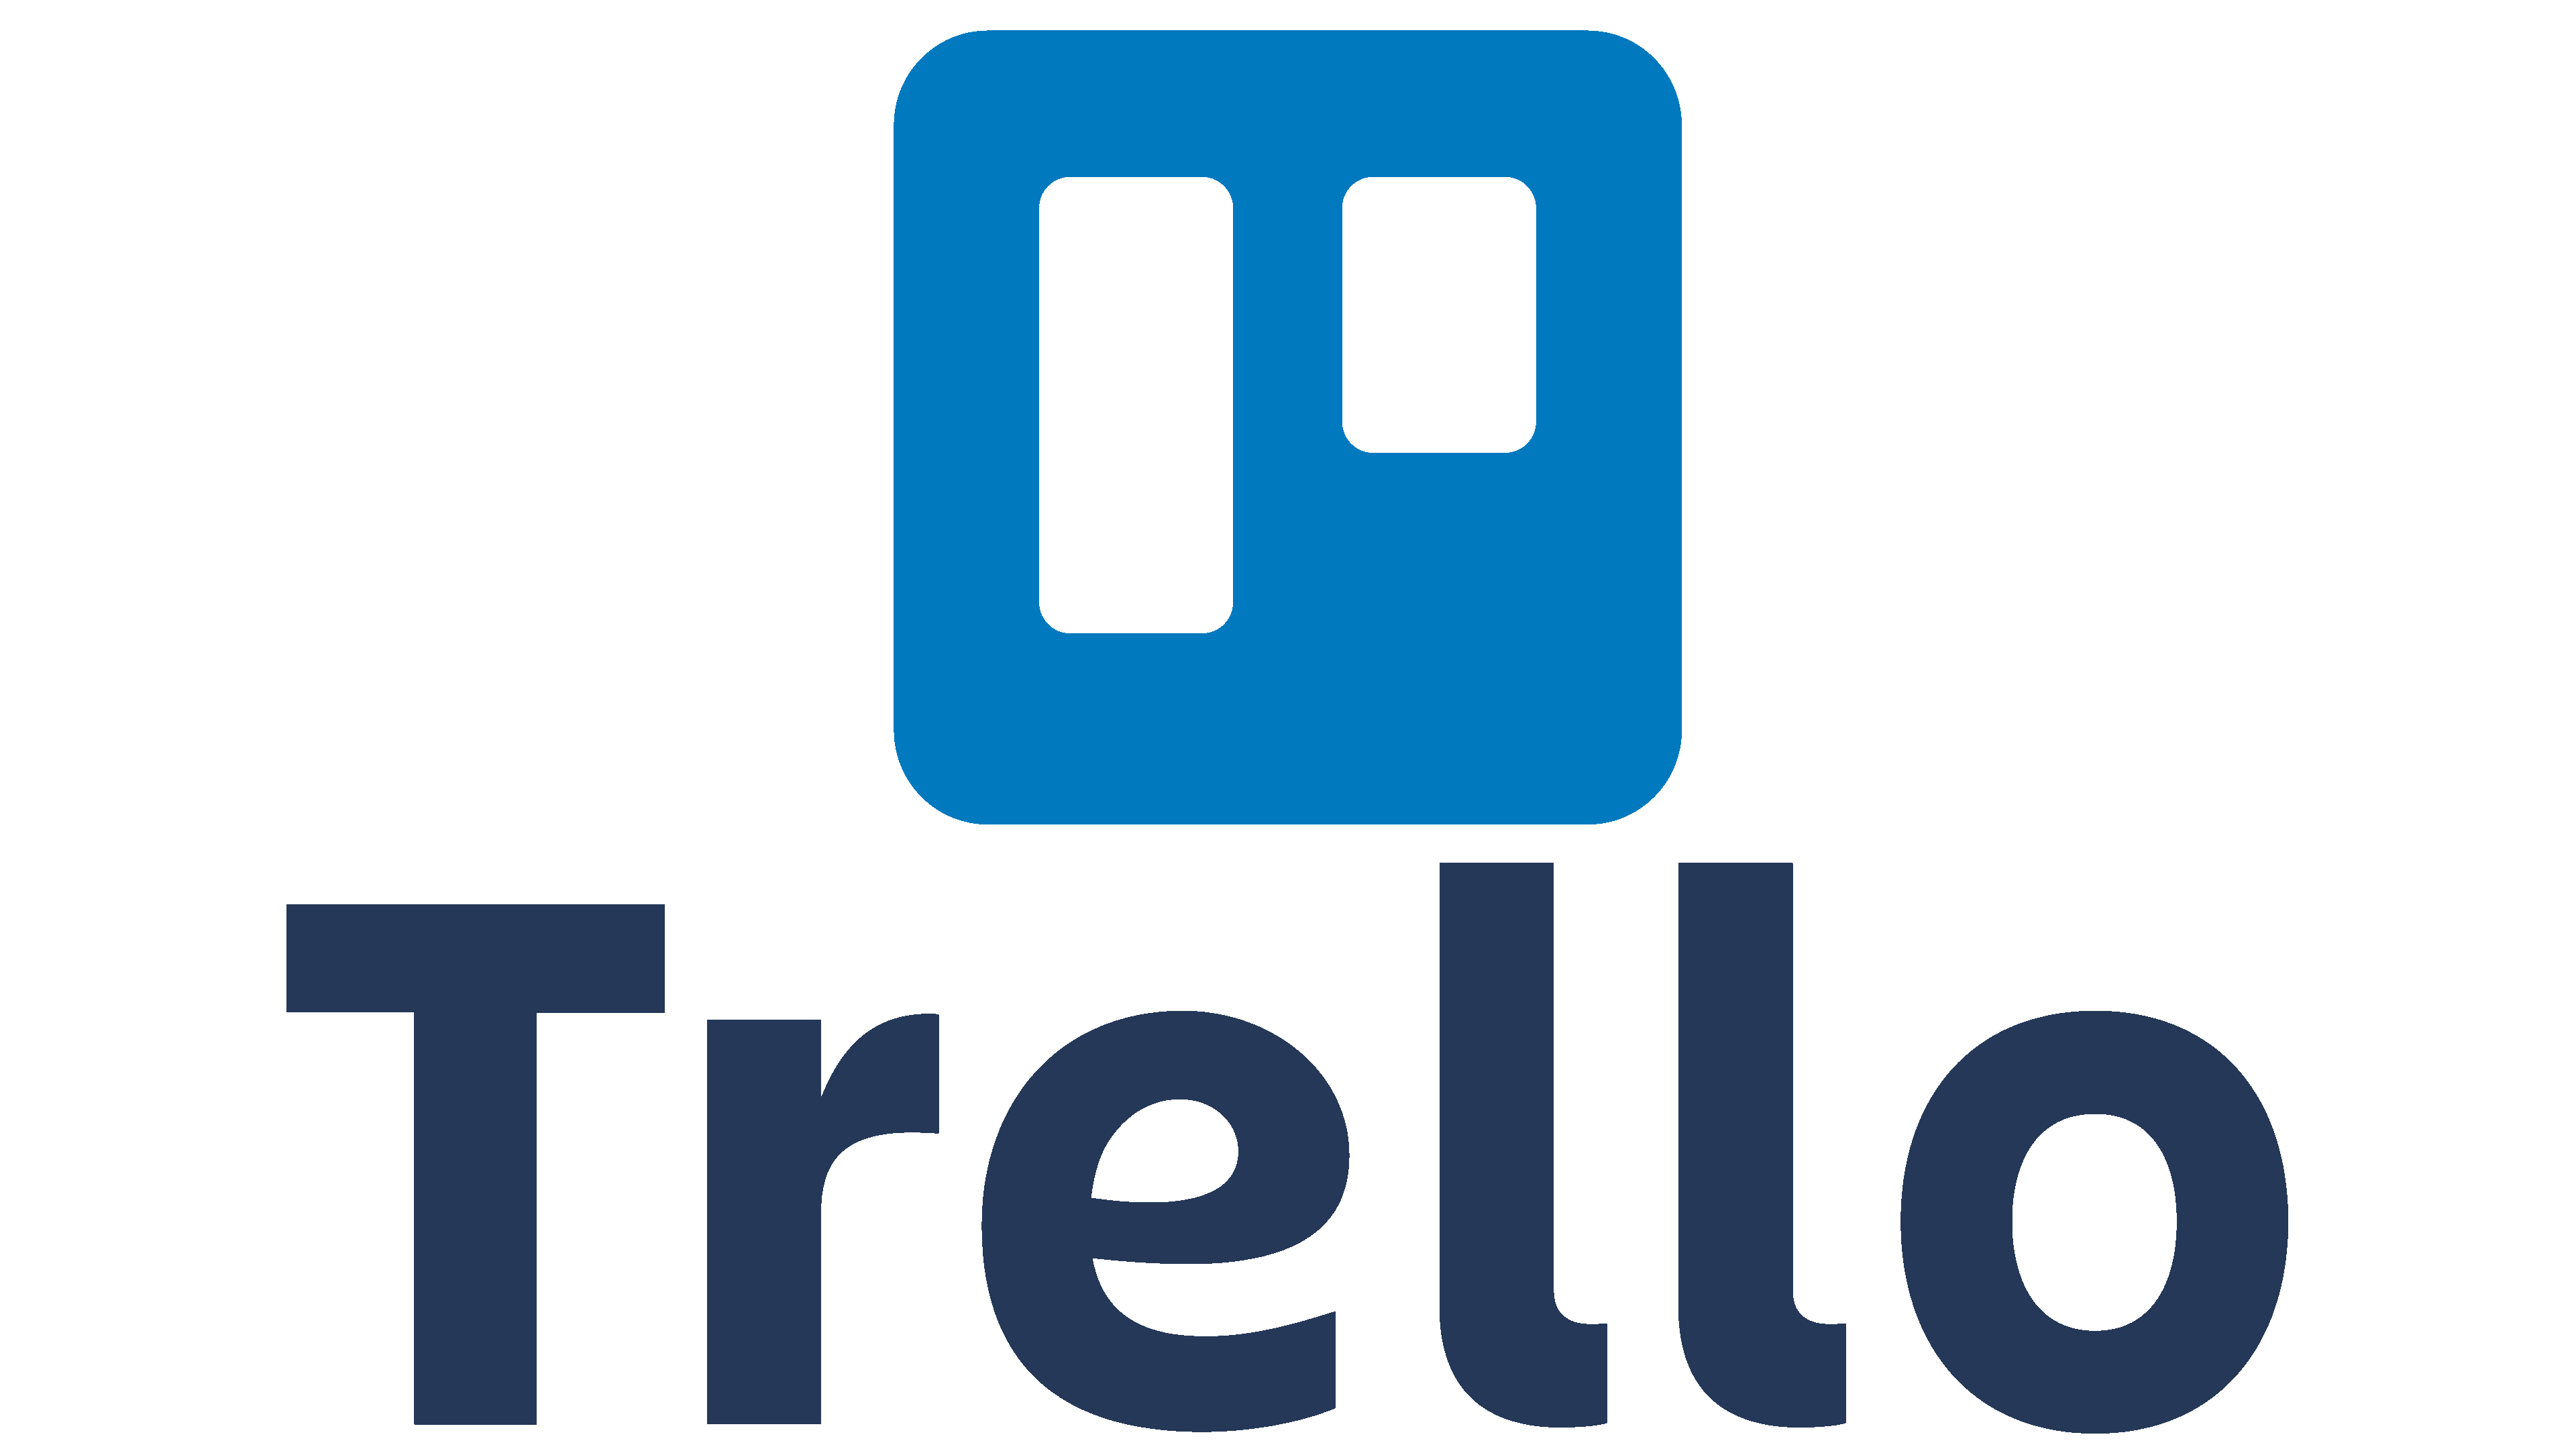 Trello-Logo